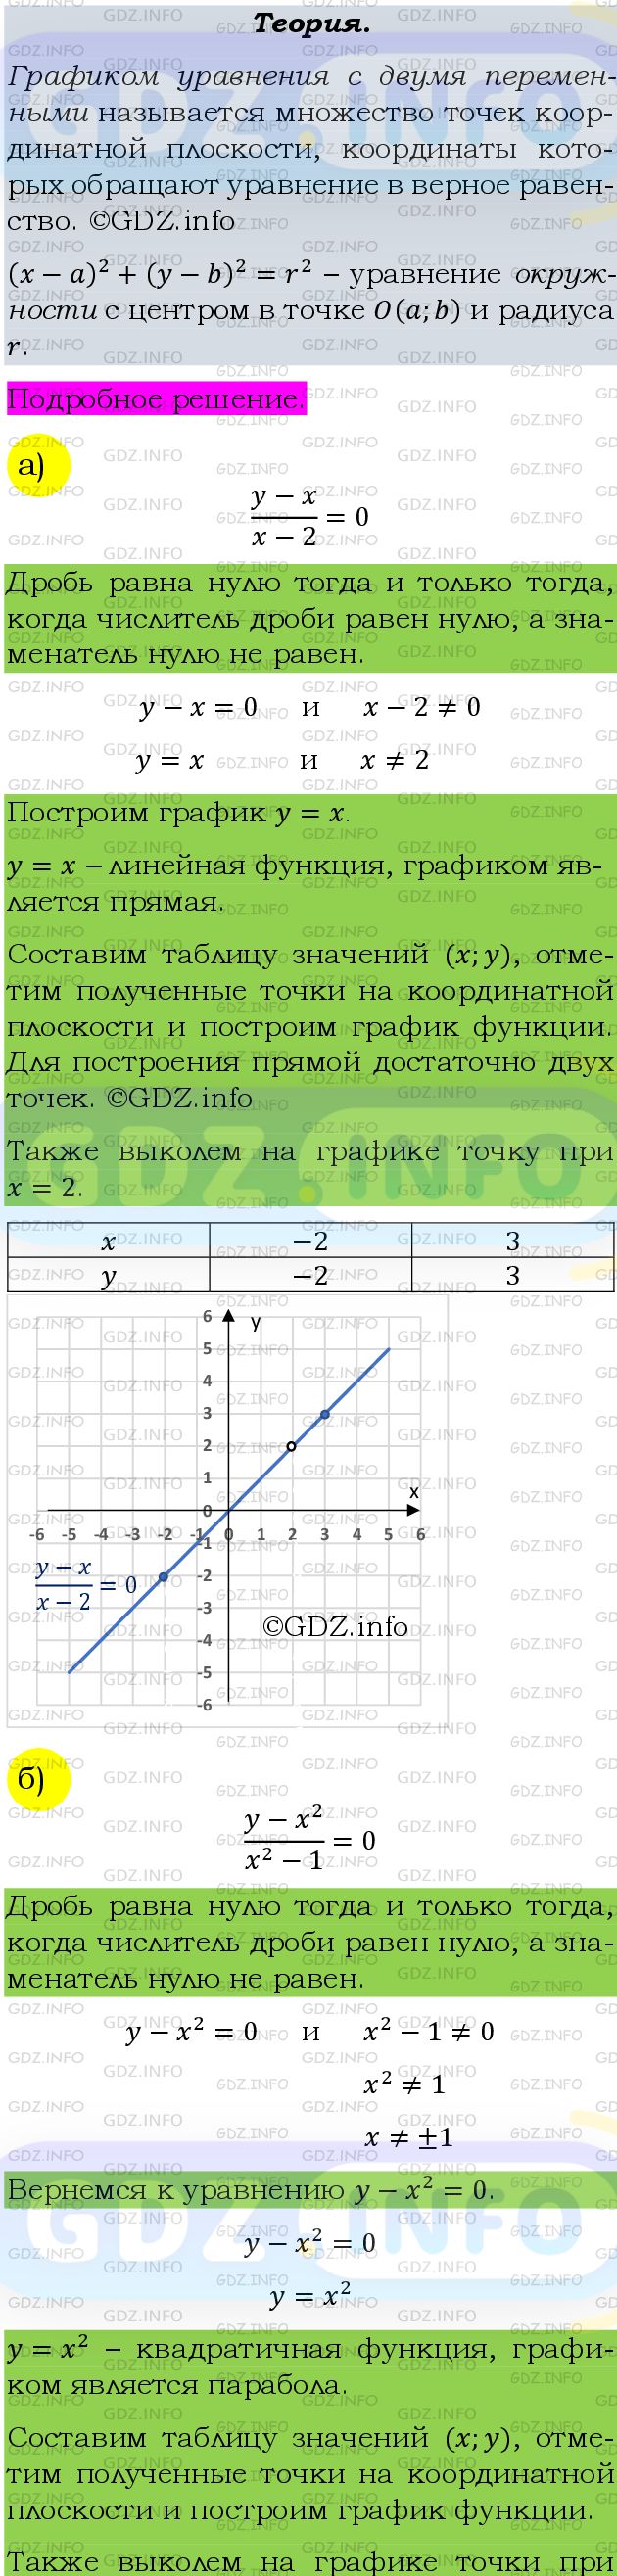 Фото подробного решения: Номер задания №485 из ГДЗ по Алгебре 9 класс: Макарычев Ю.Н.